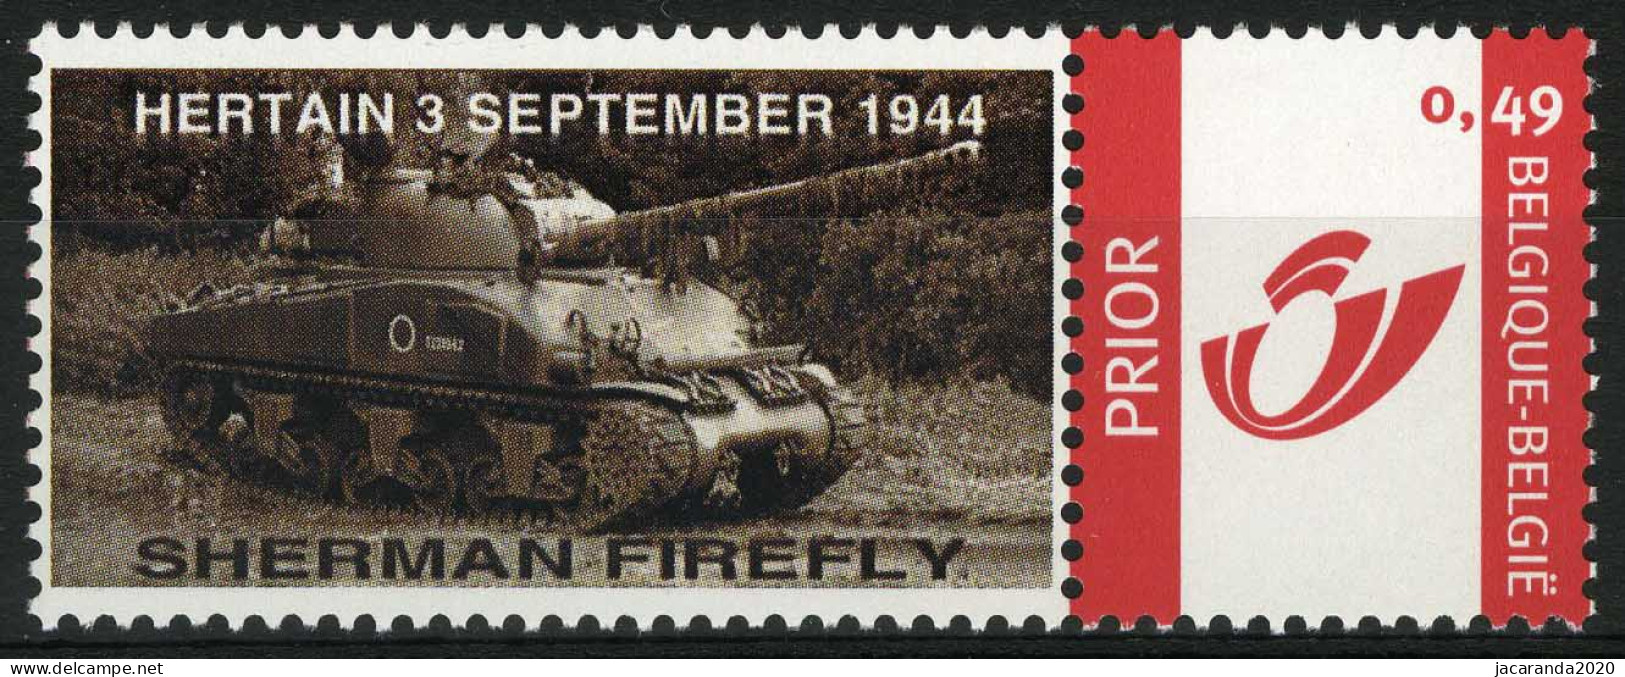 België 3183 - Duostamp - Shireman Firefly - Oorlog - Tank - Hertain 3 September 1944 - Postfris